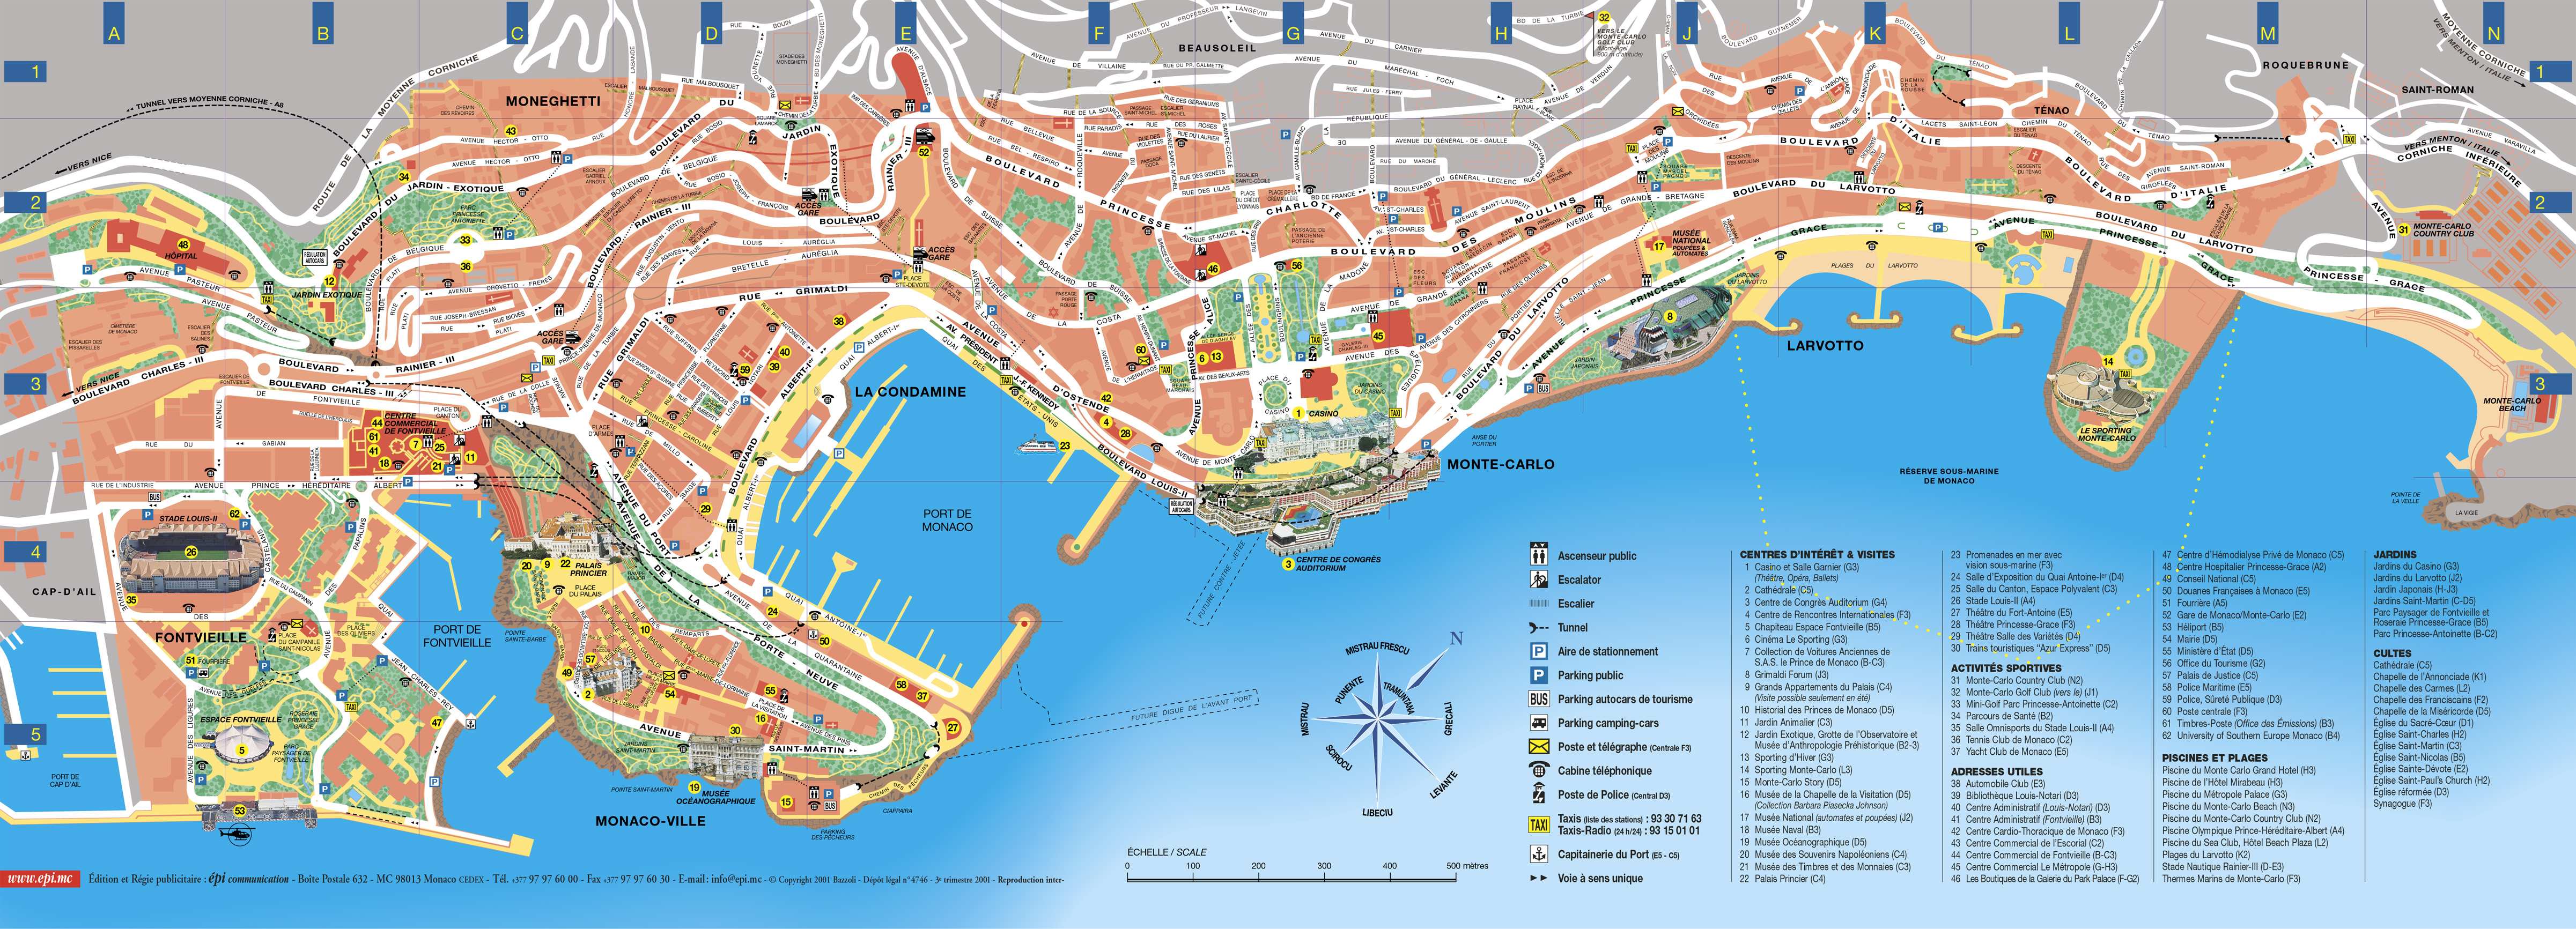 monaco térkép Large Monte Carlo Maps for Free Download and Print | High  monaco térkép